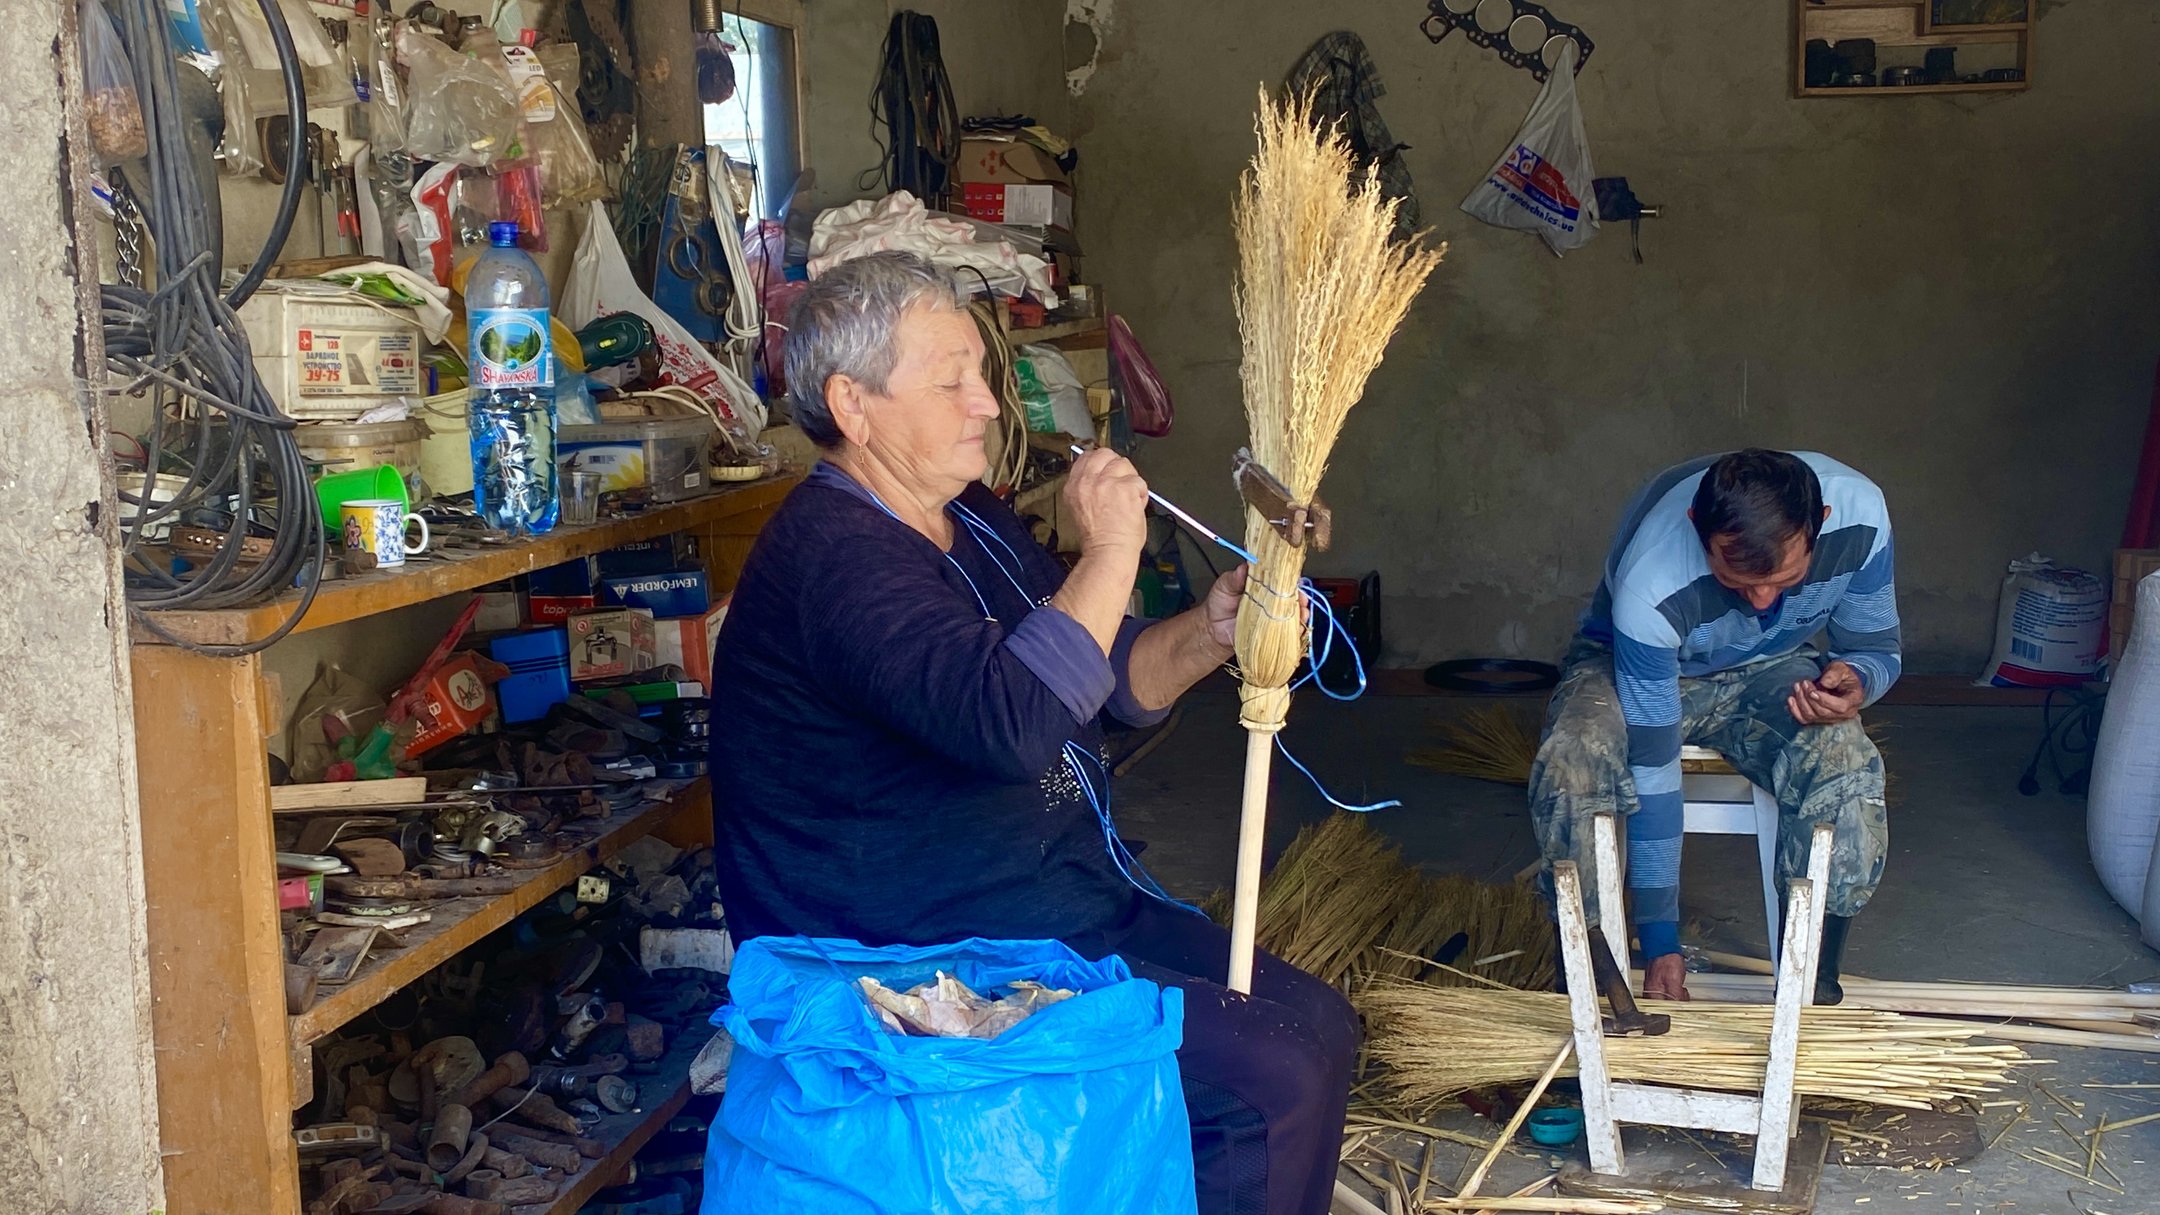 Майже 20 тисяч віників на рік виготовляють із сорго жителі села Чомонин на Закарпатті (ФОТО, ВІДЕО)